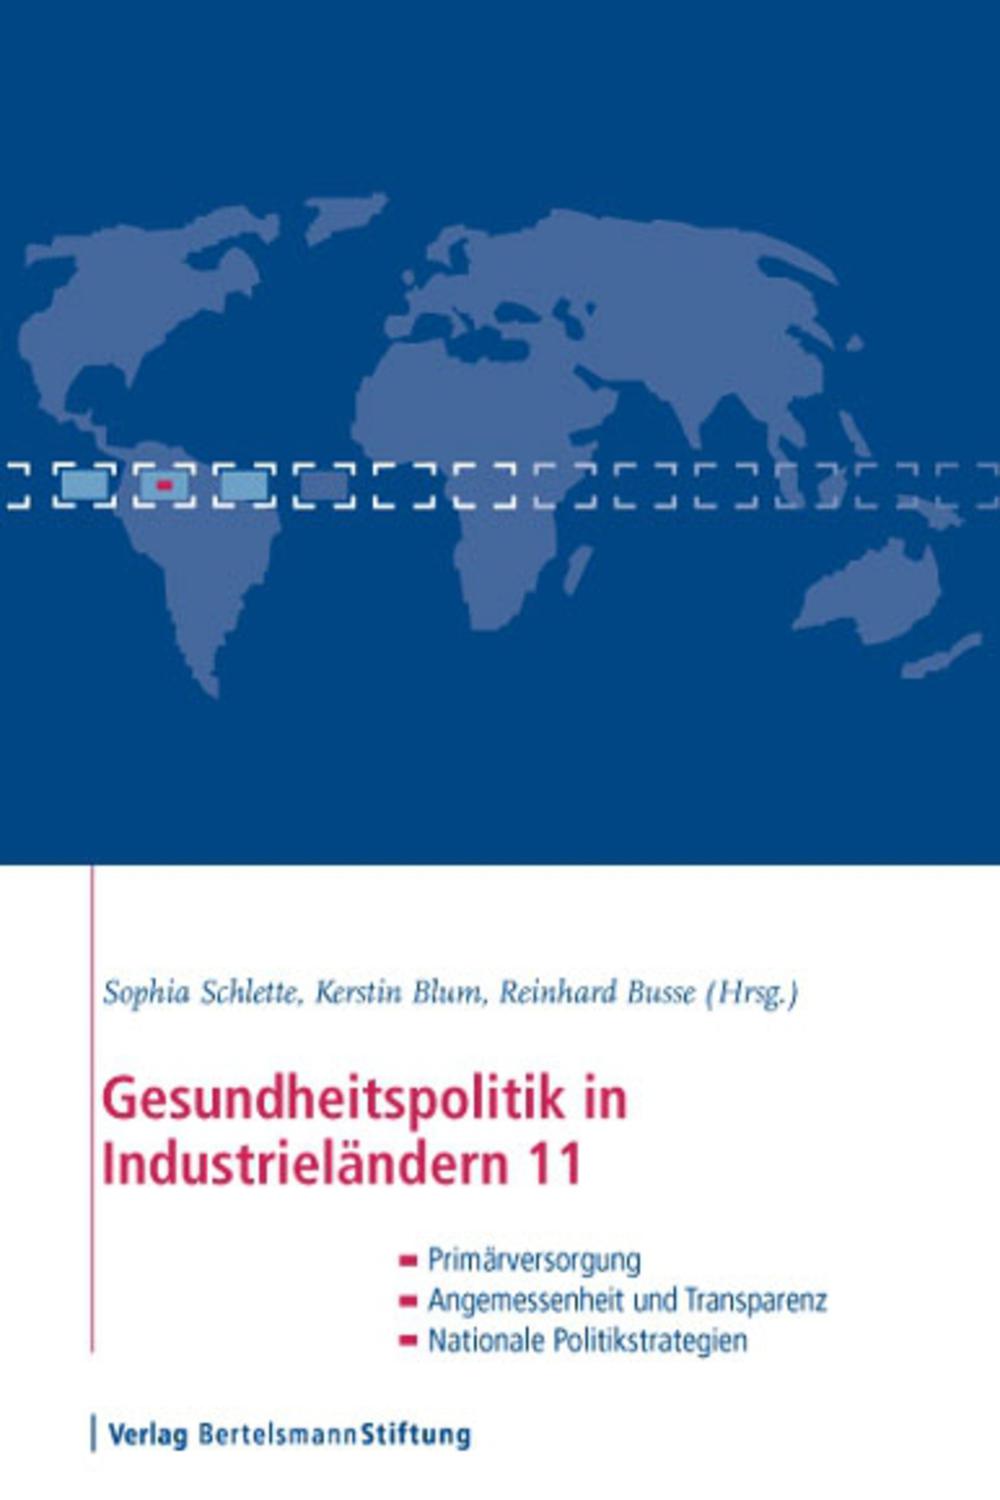 Gesundheitspolitik in Industrieländern 11 - Sophia Schlette, Kerstin Blum, Reinhard Busse